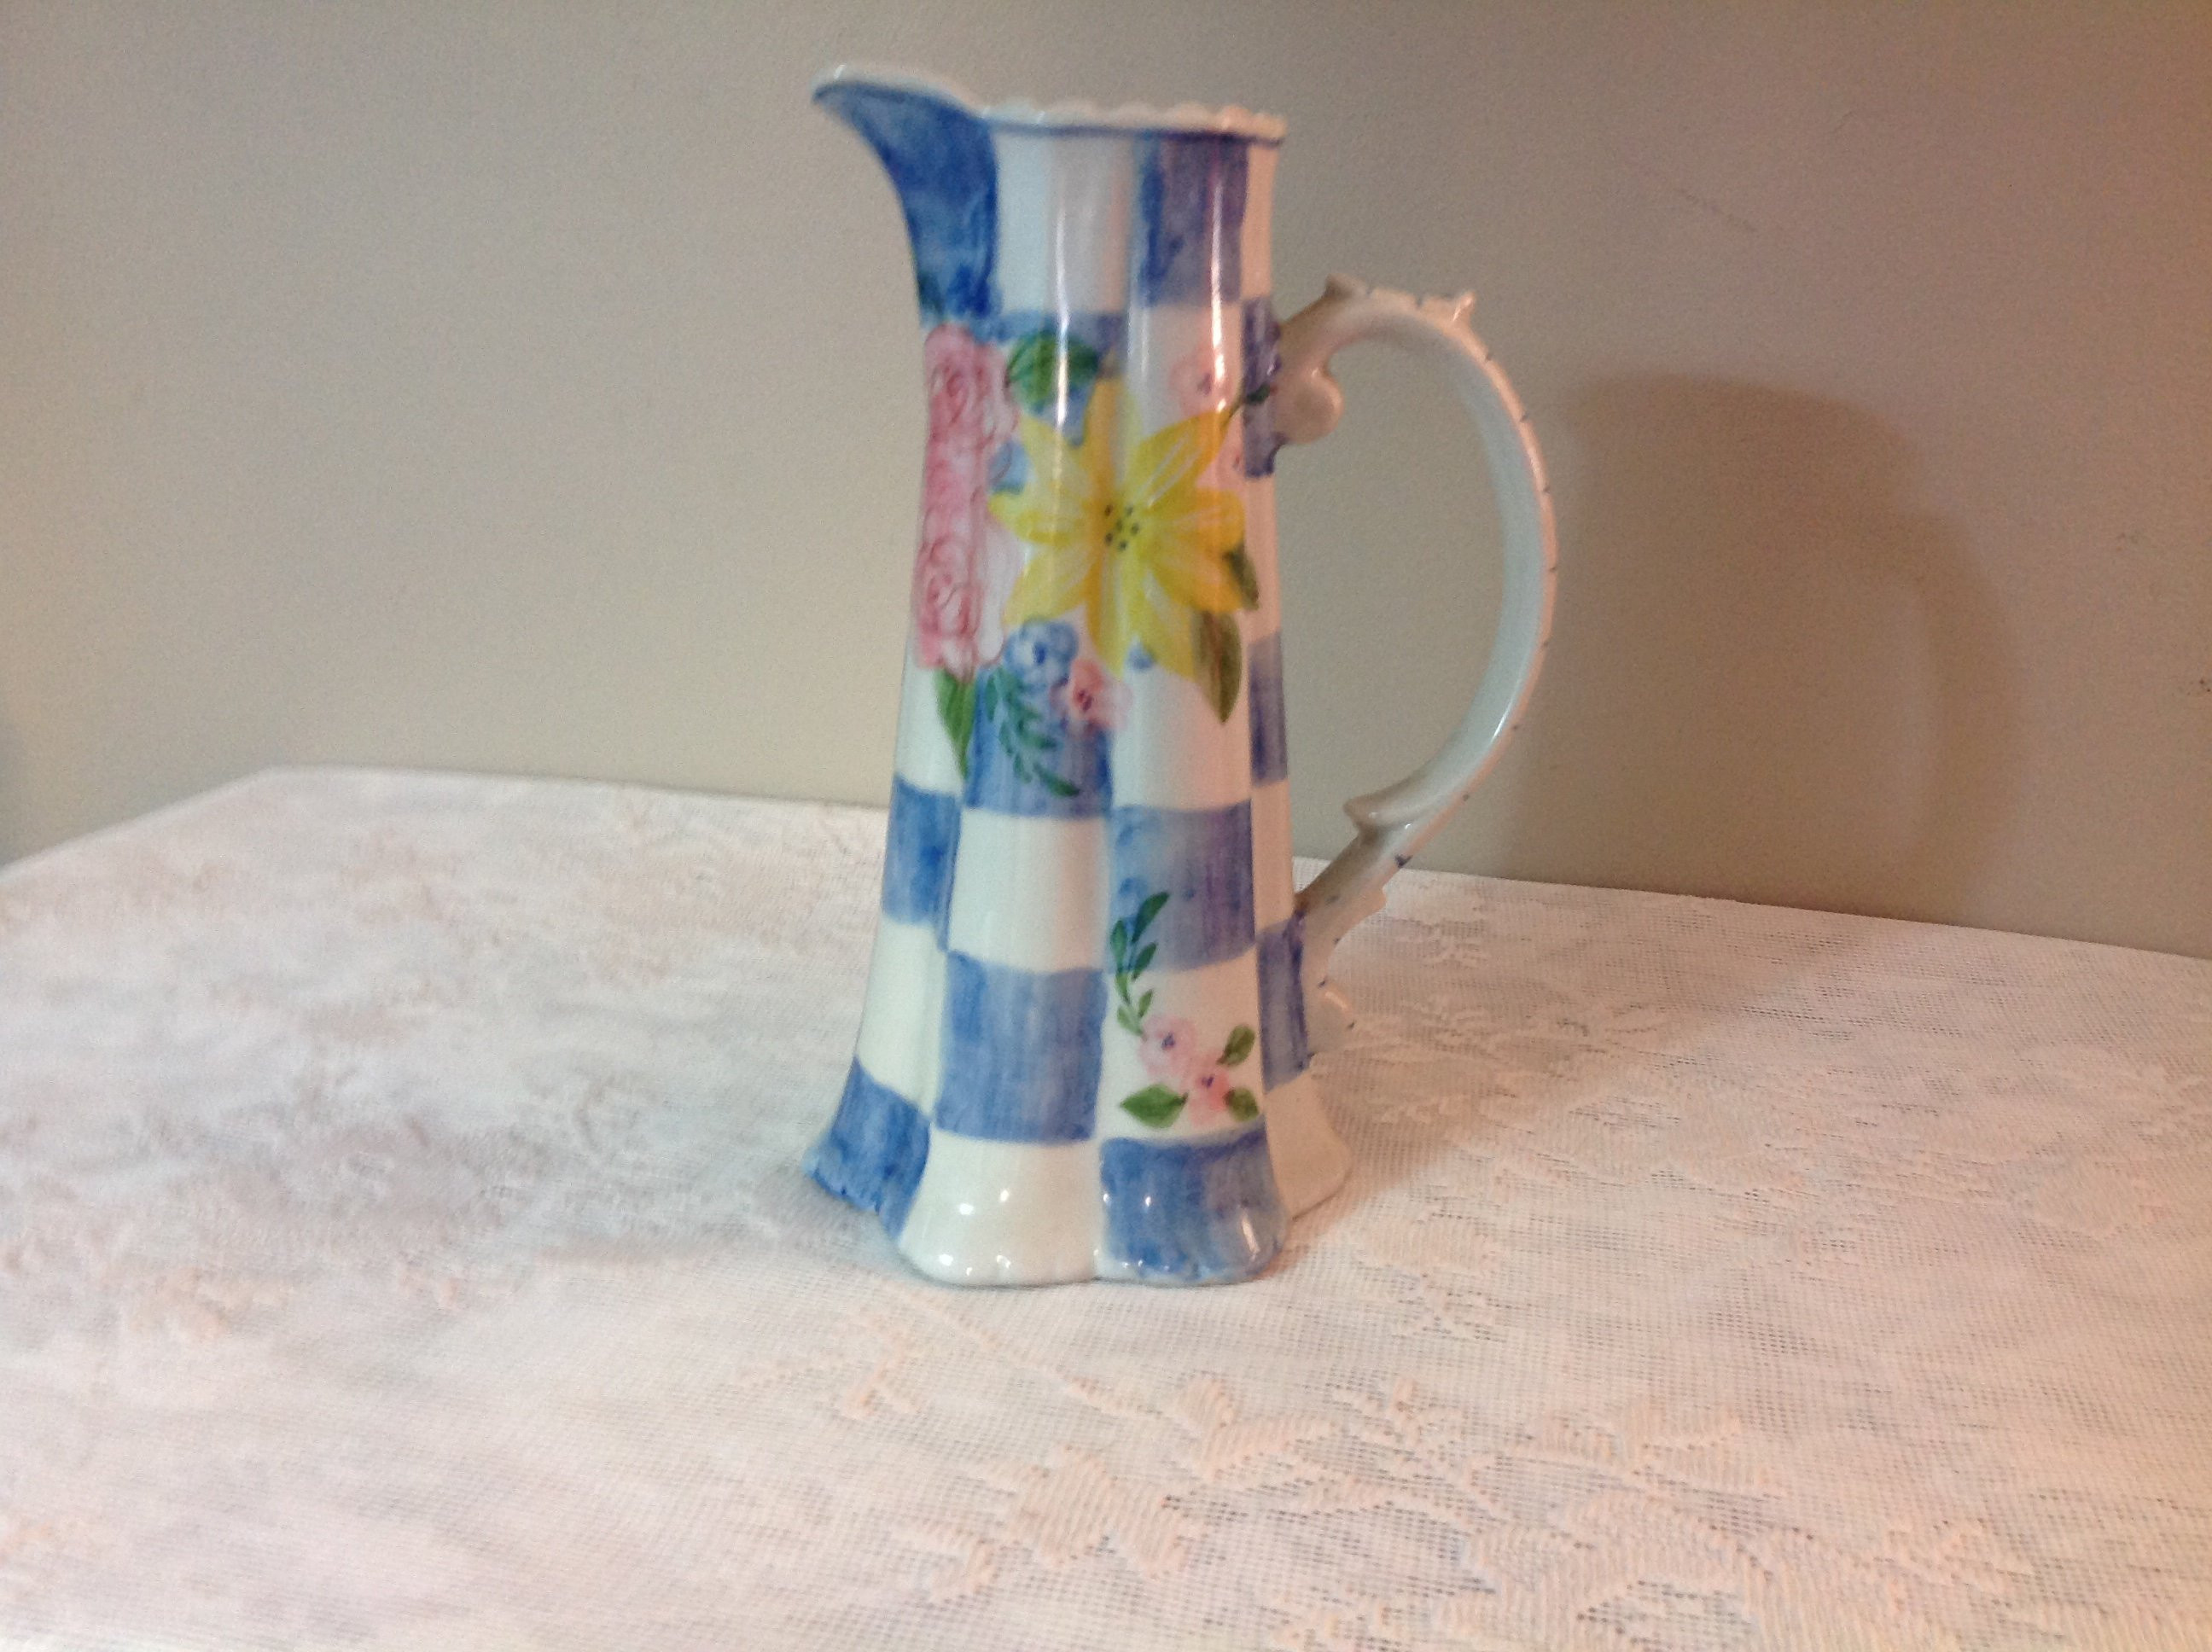 12 Lovely Royal Haeger Vase 2024 free download royal haeger vase of vintage flowered pitcher vase andrea sadek vase pitcher etsy with regard to dc29fc294c28ezoom